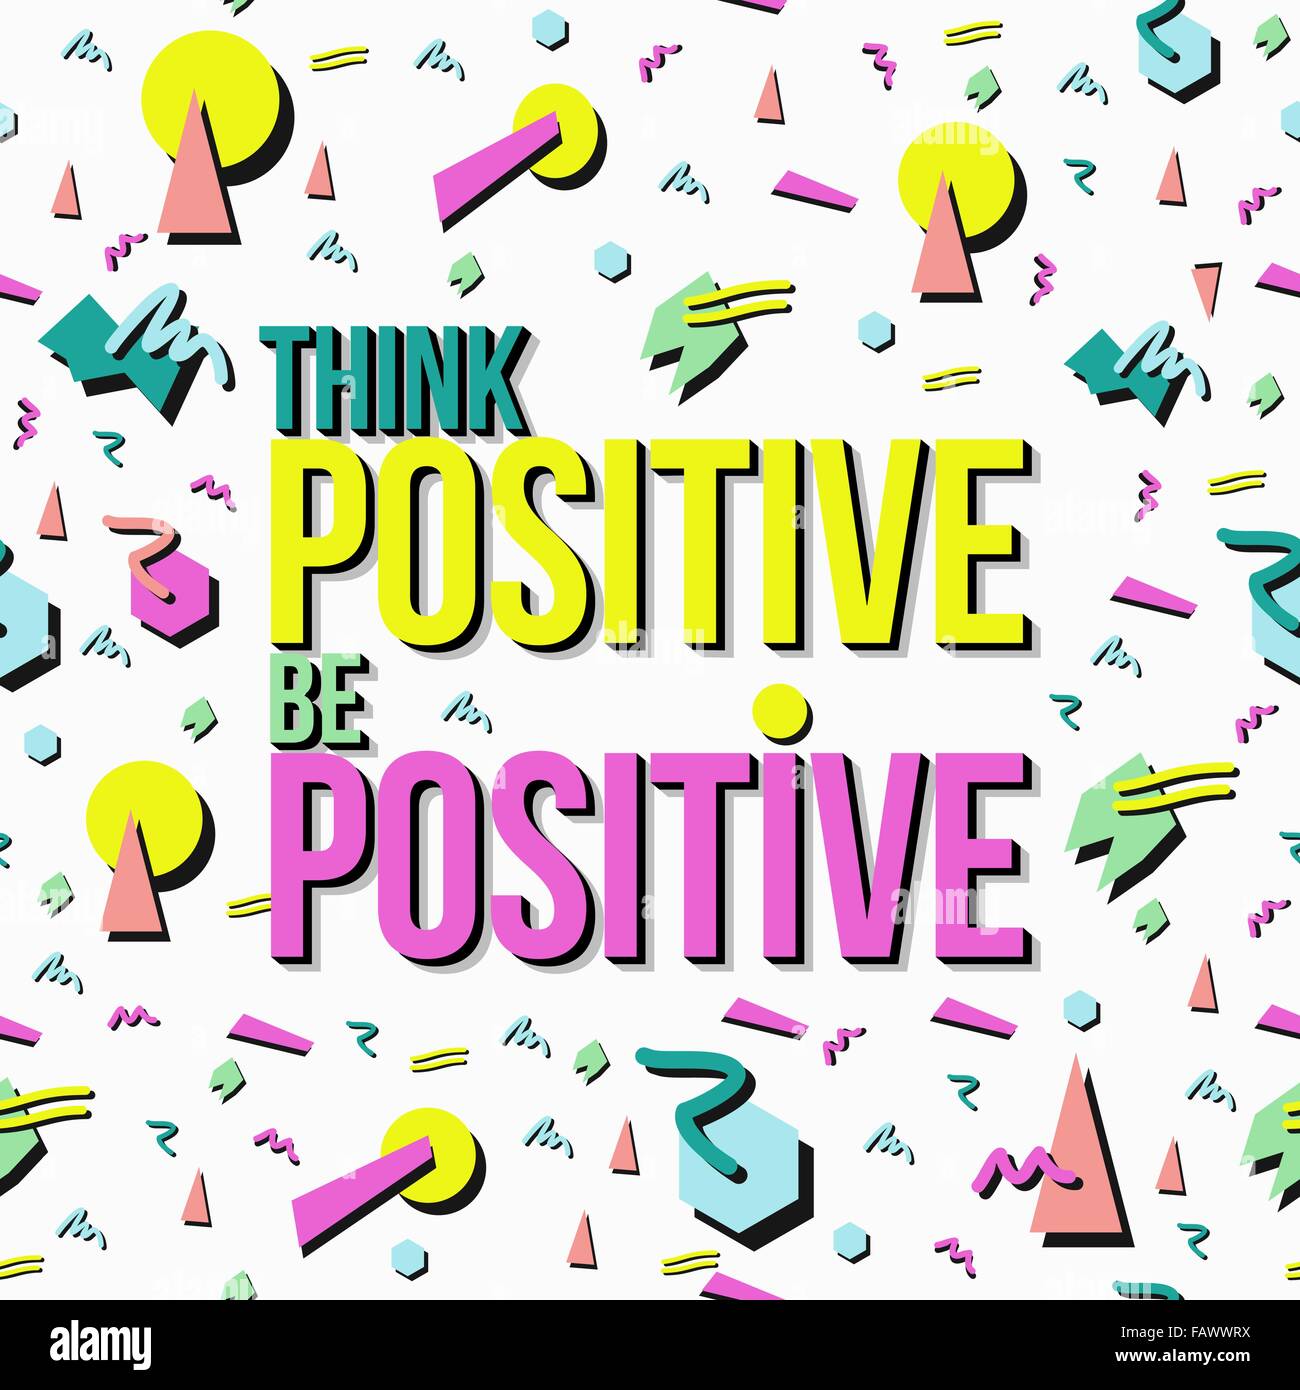 Denken und positiv sein. Inspirierend Zitat Poster, Positivität Konzept Text mit Retro-90er Memphis style Hintergrund. EPS10 Vektor Stock Vektor